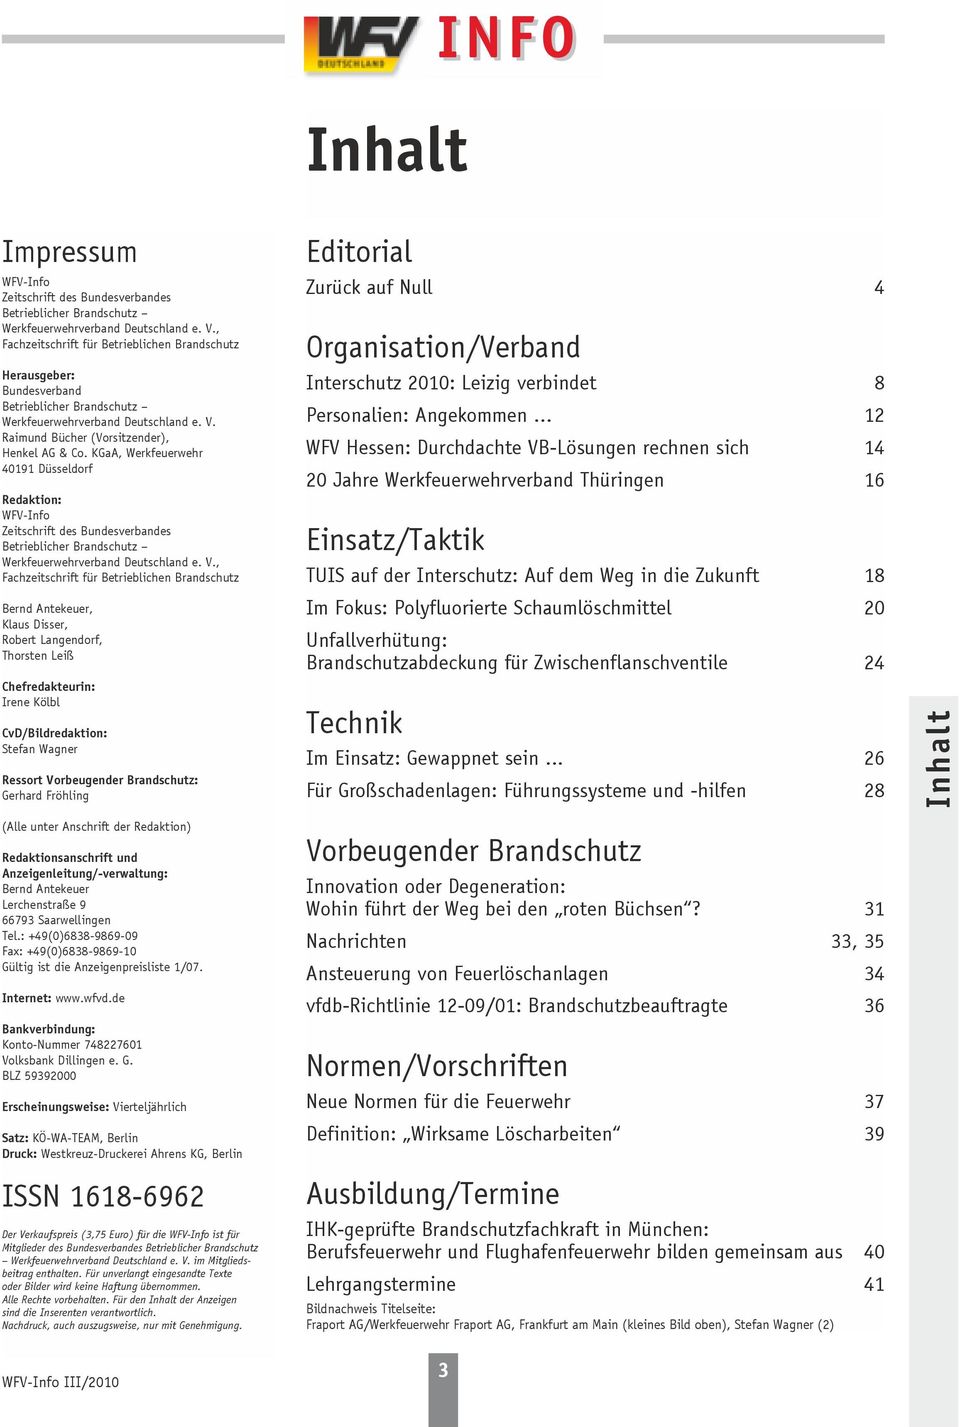 KGaA, Werkfeuerwehr 40191 Düsseldorf Redaktion: WFV-Info Zeitschrift des Bundesverbandes Betrieblicher Brandschutz Werkfeuerwehrverband Deutschland e. V.